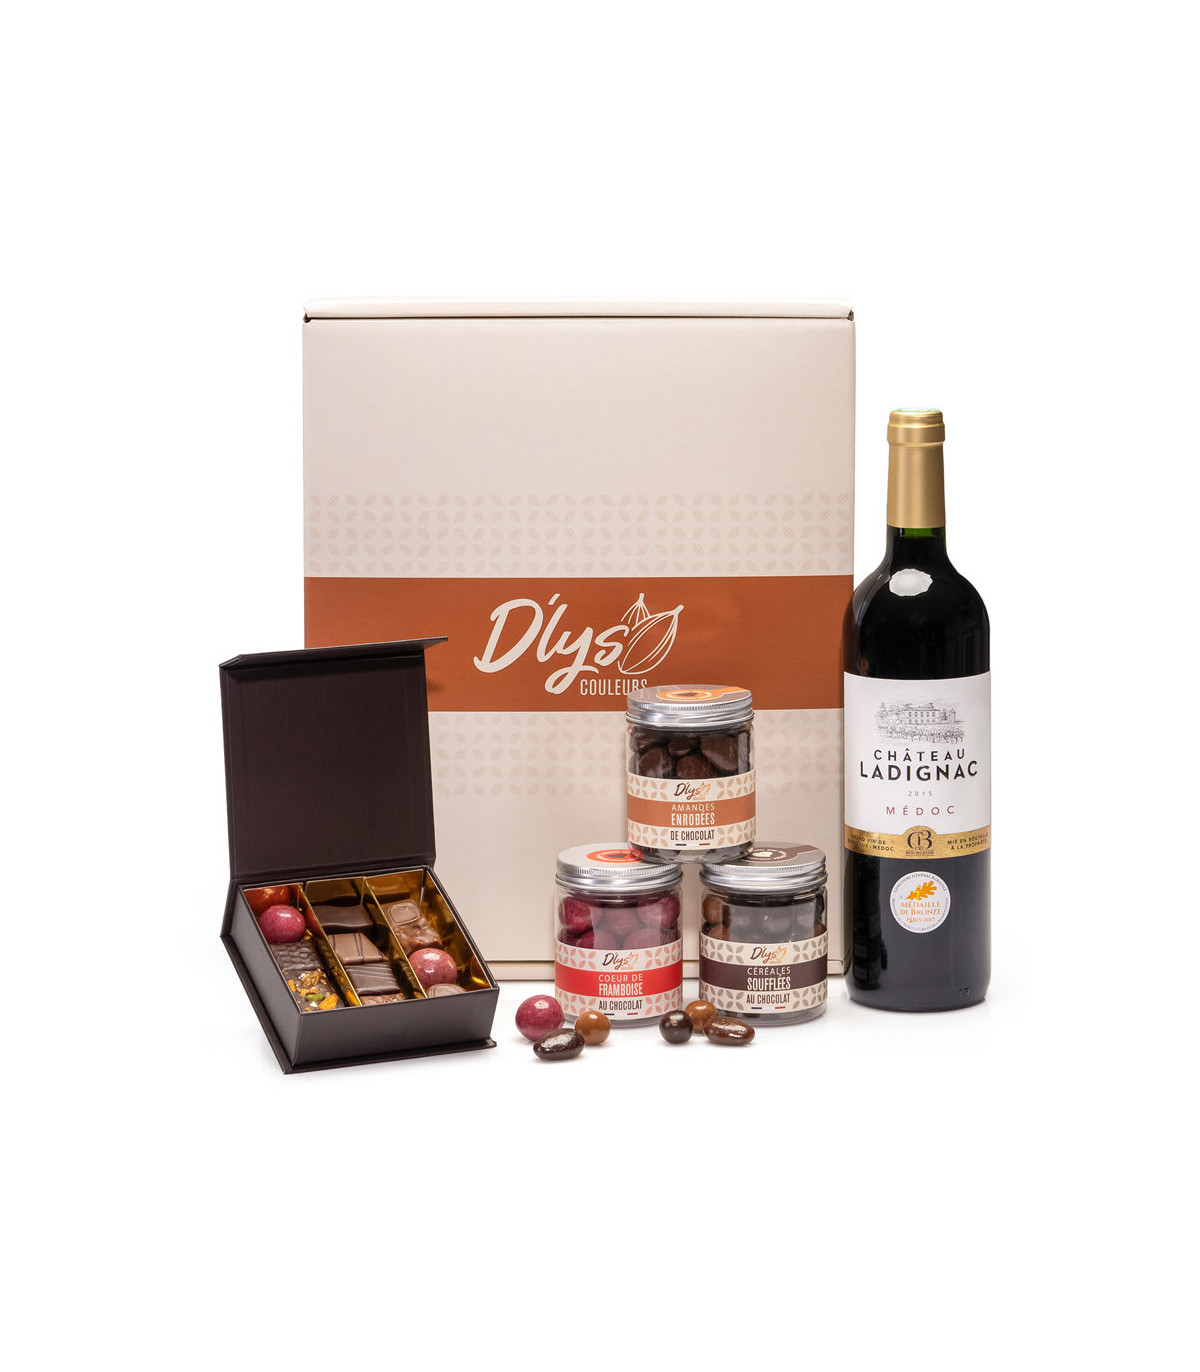 Cadeau chocolat et vin - Acheter chocolat et vin avec D'lys couleurs